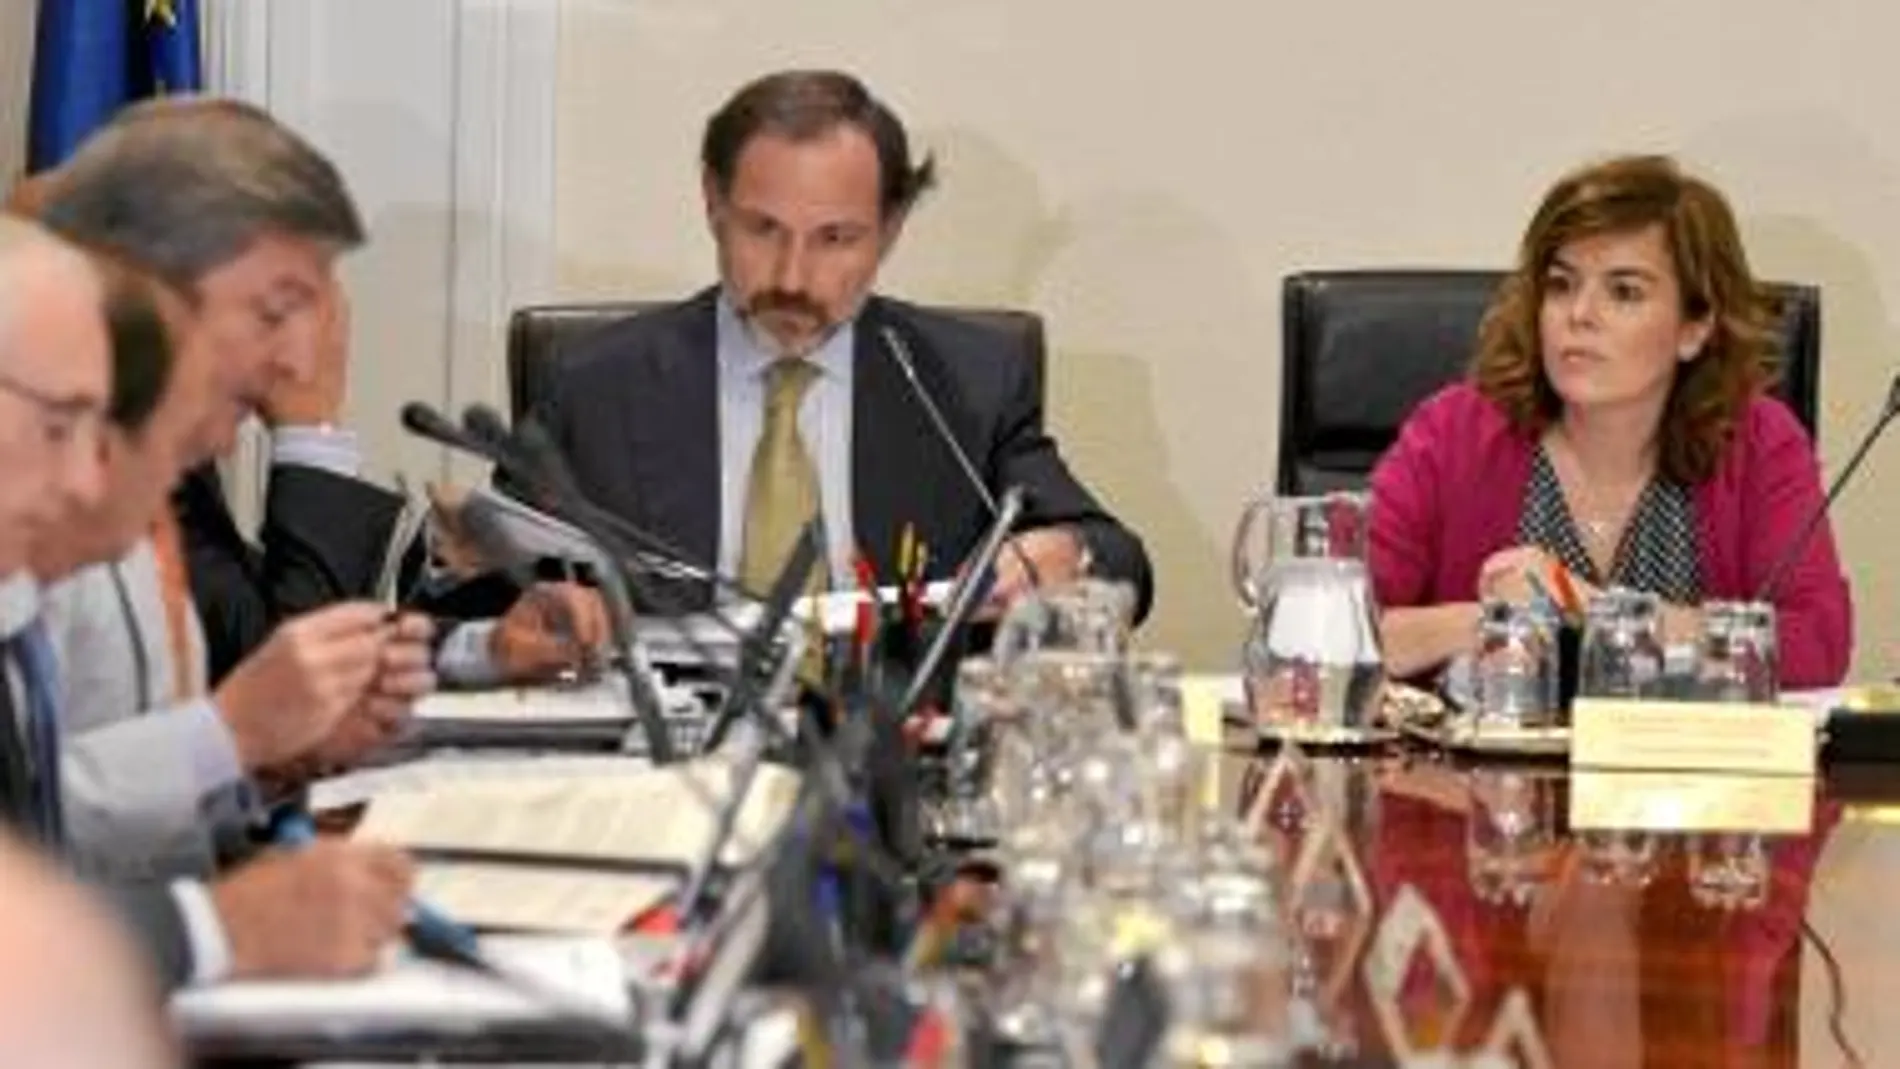 La vicepresidenta Soraya Sáenz de Santamaría presidió ayer la comisión nacional de secretarios de Estado y subsecretarios